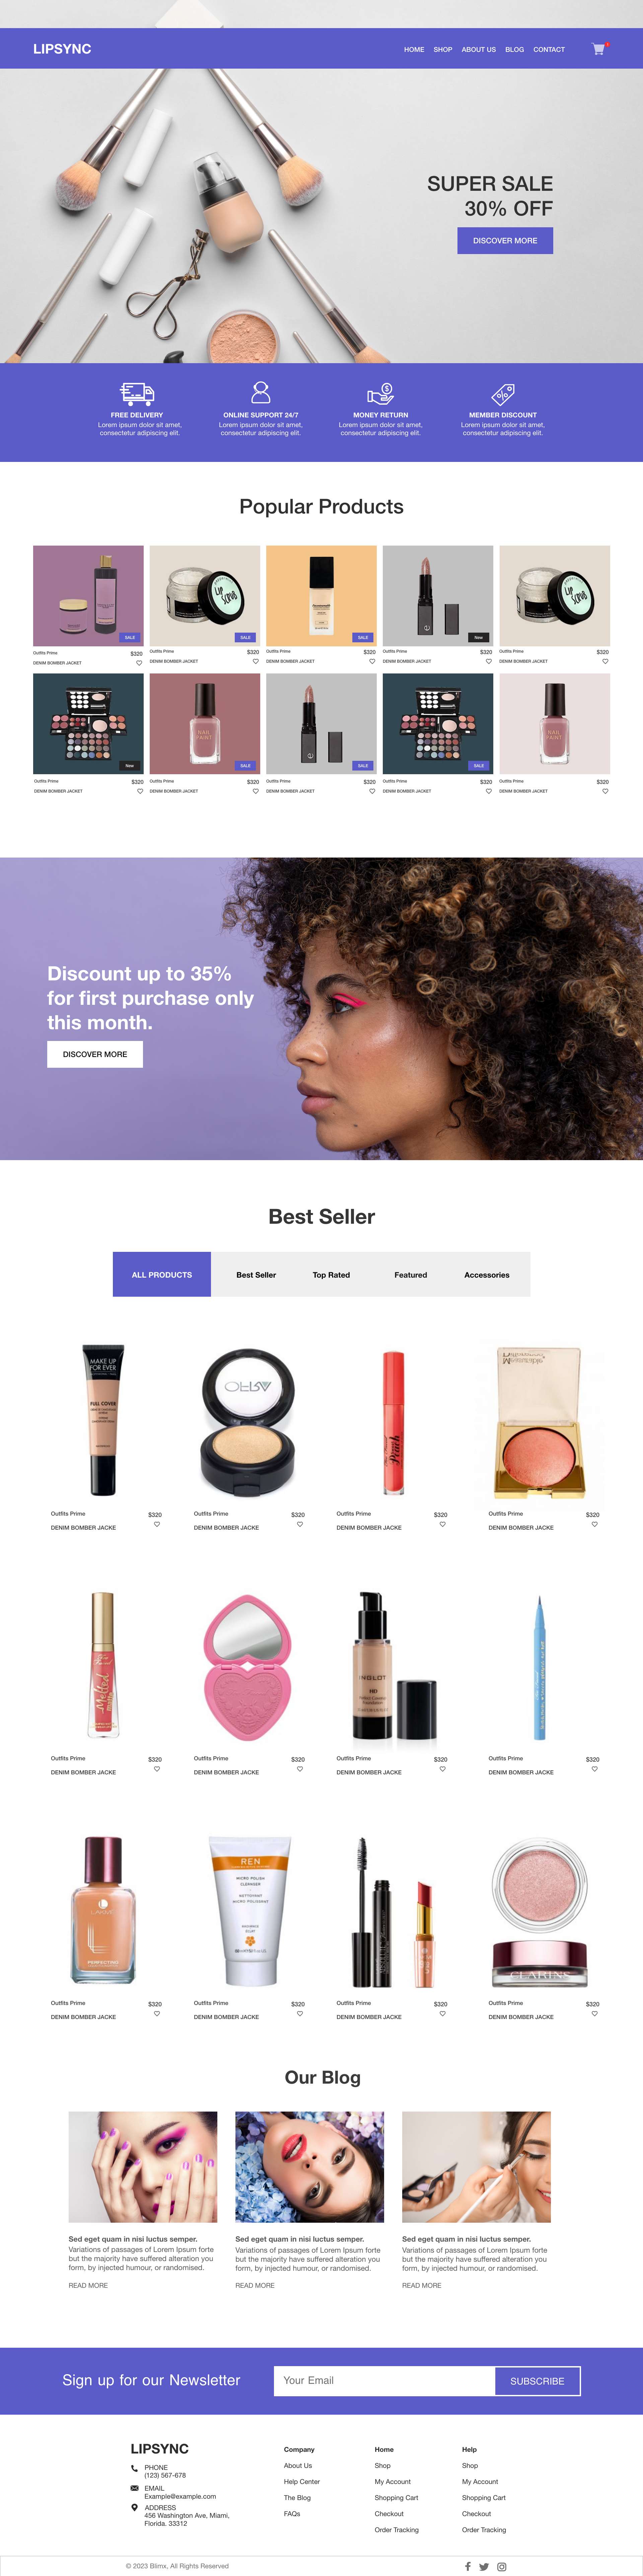 Make Up Store Website Design